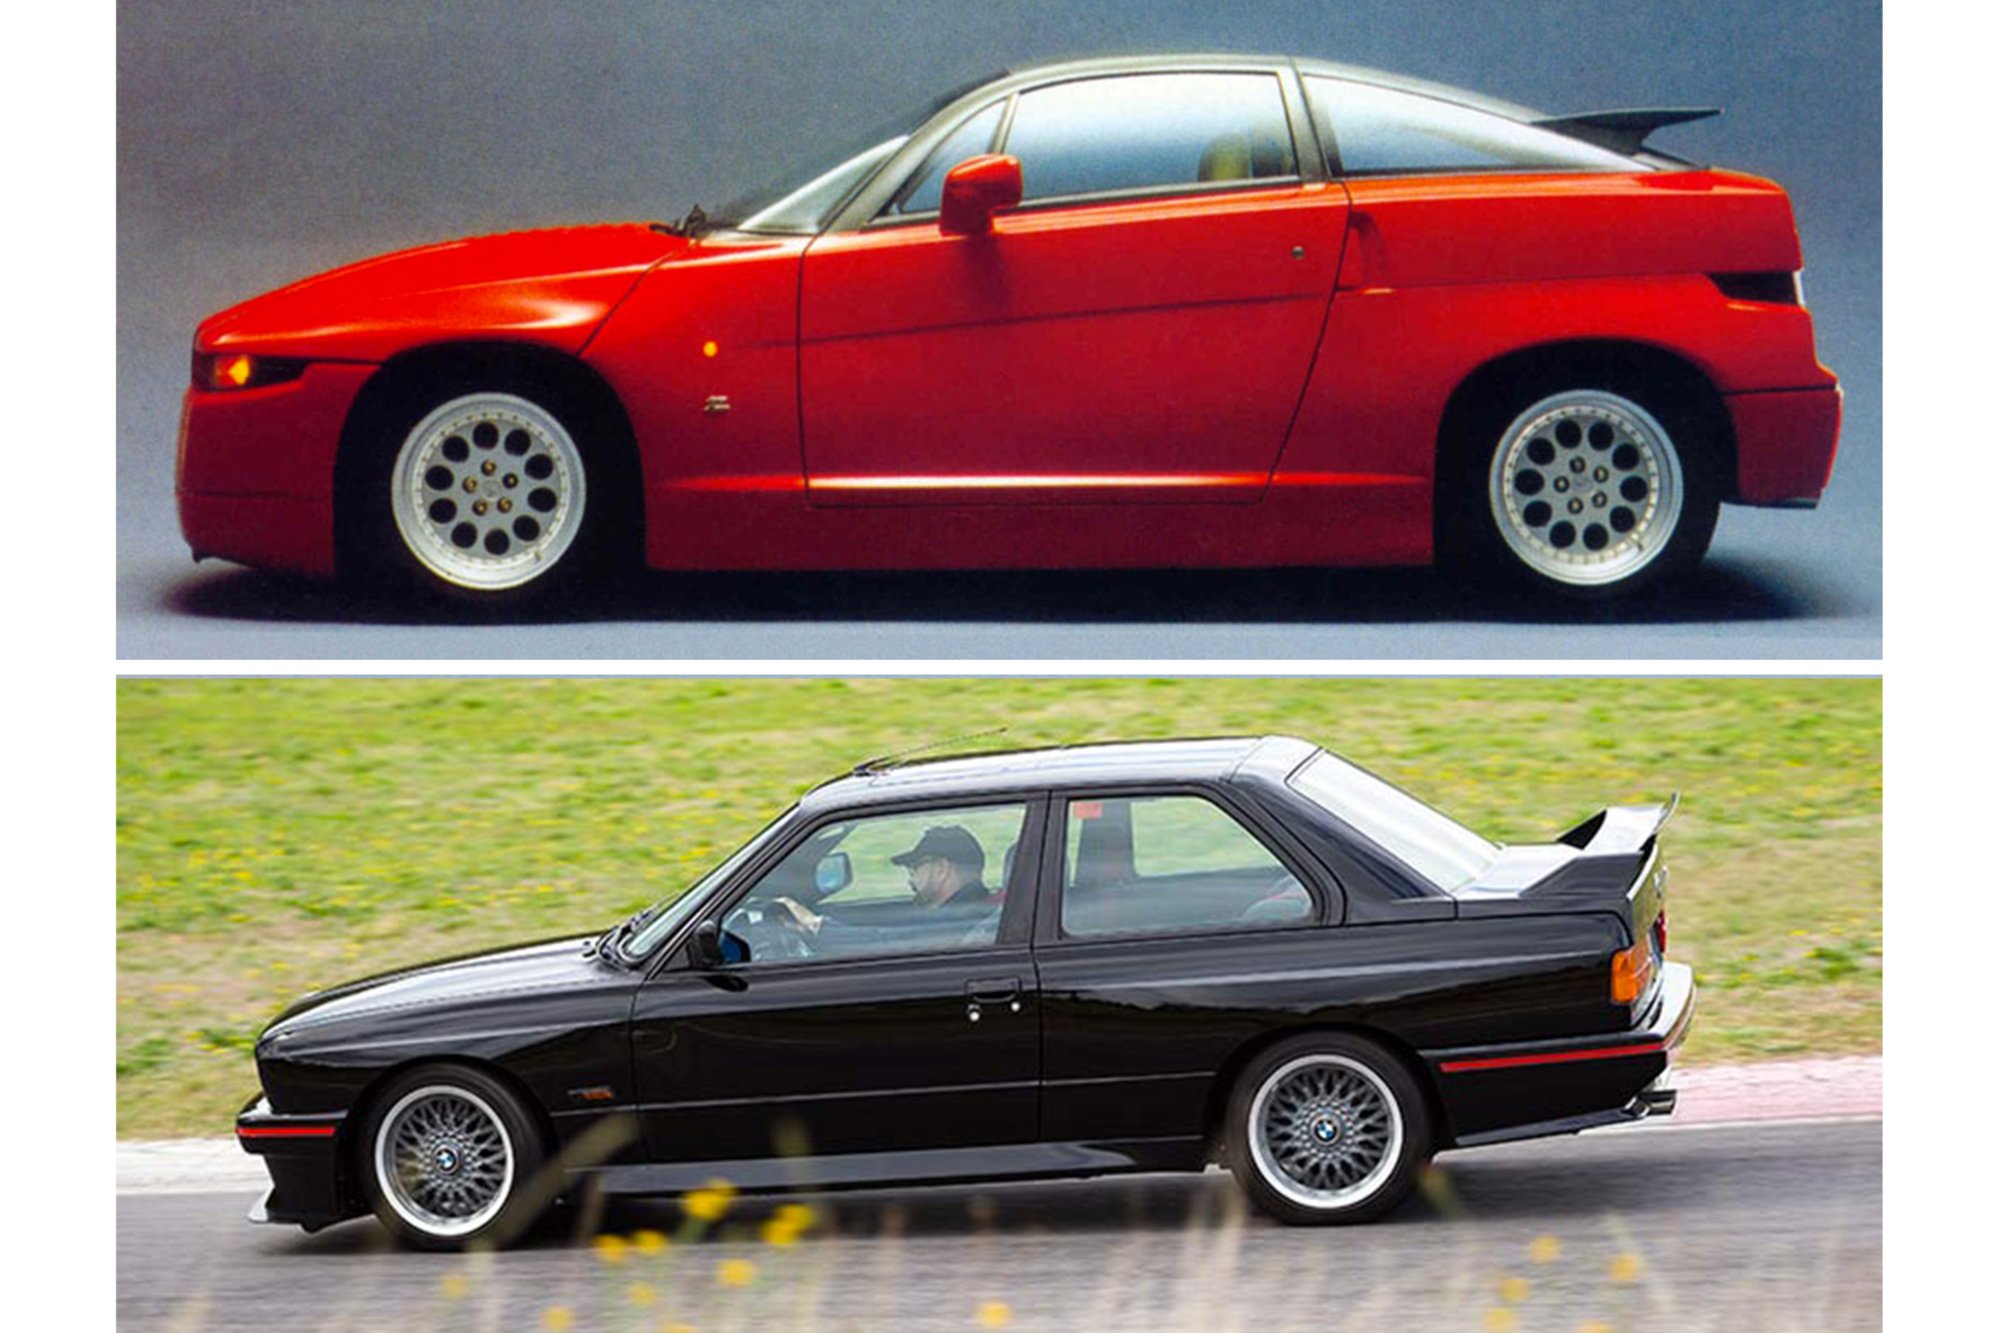 Cinque lustri fa, Confronto: ES30 Vs E30, ovvero Alfa Romeo SZ Vs BMW M3